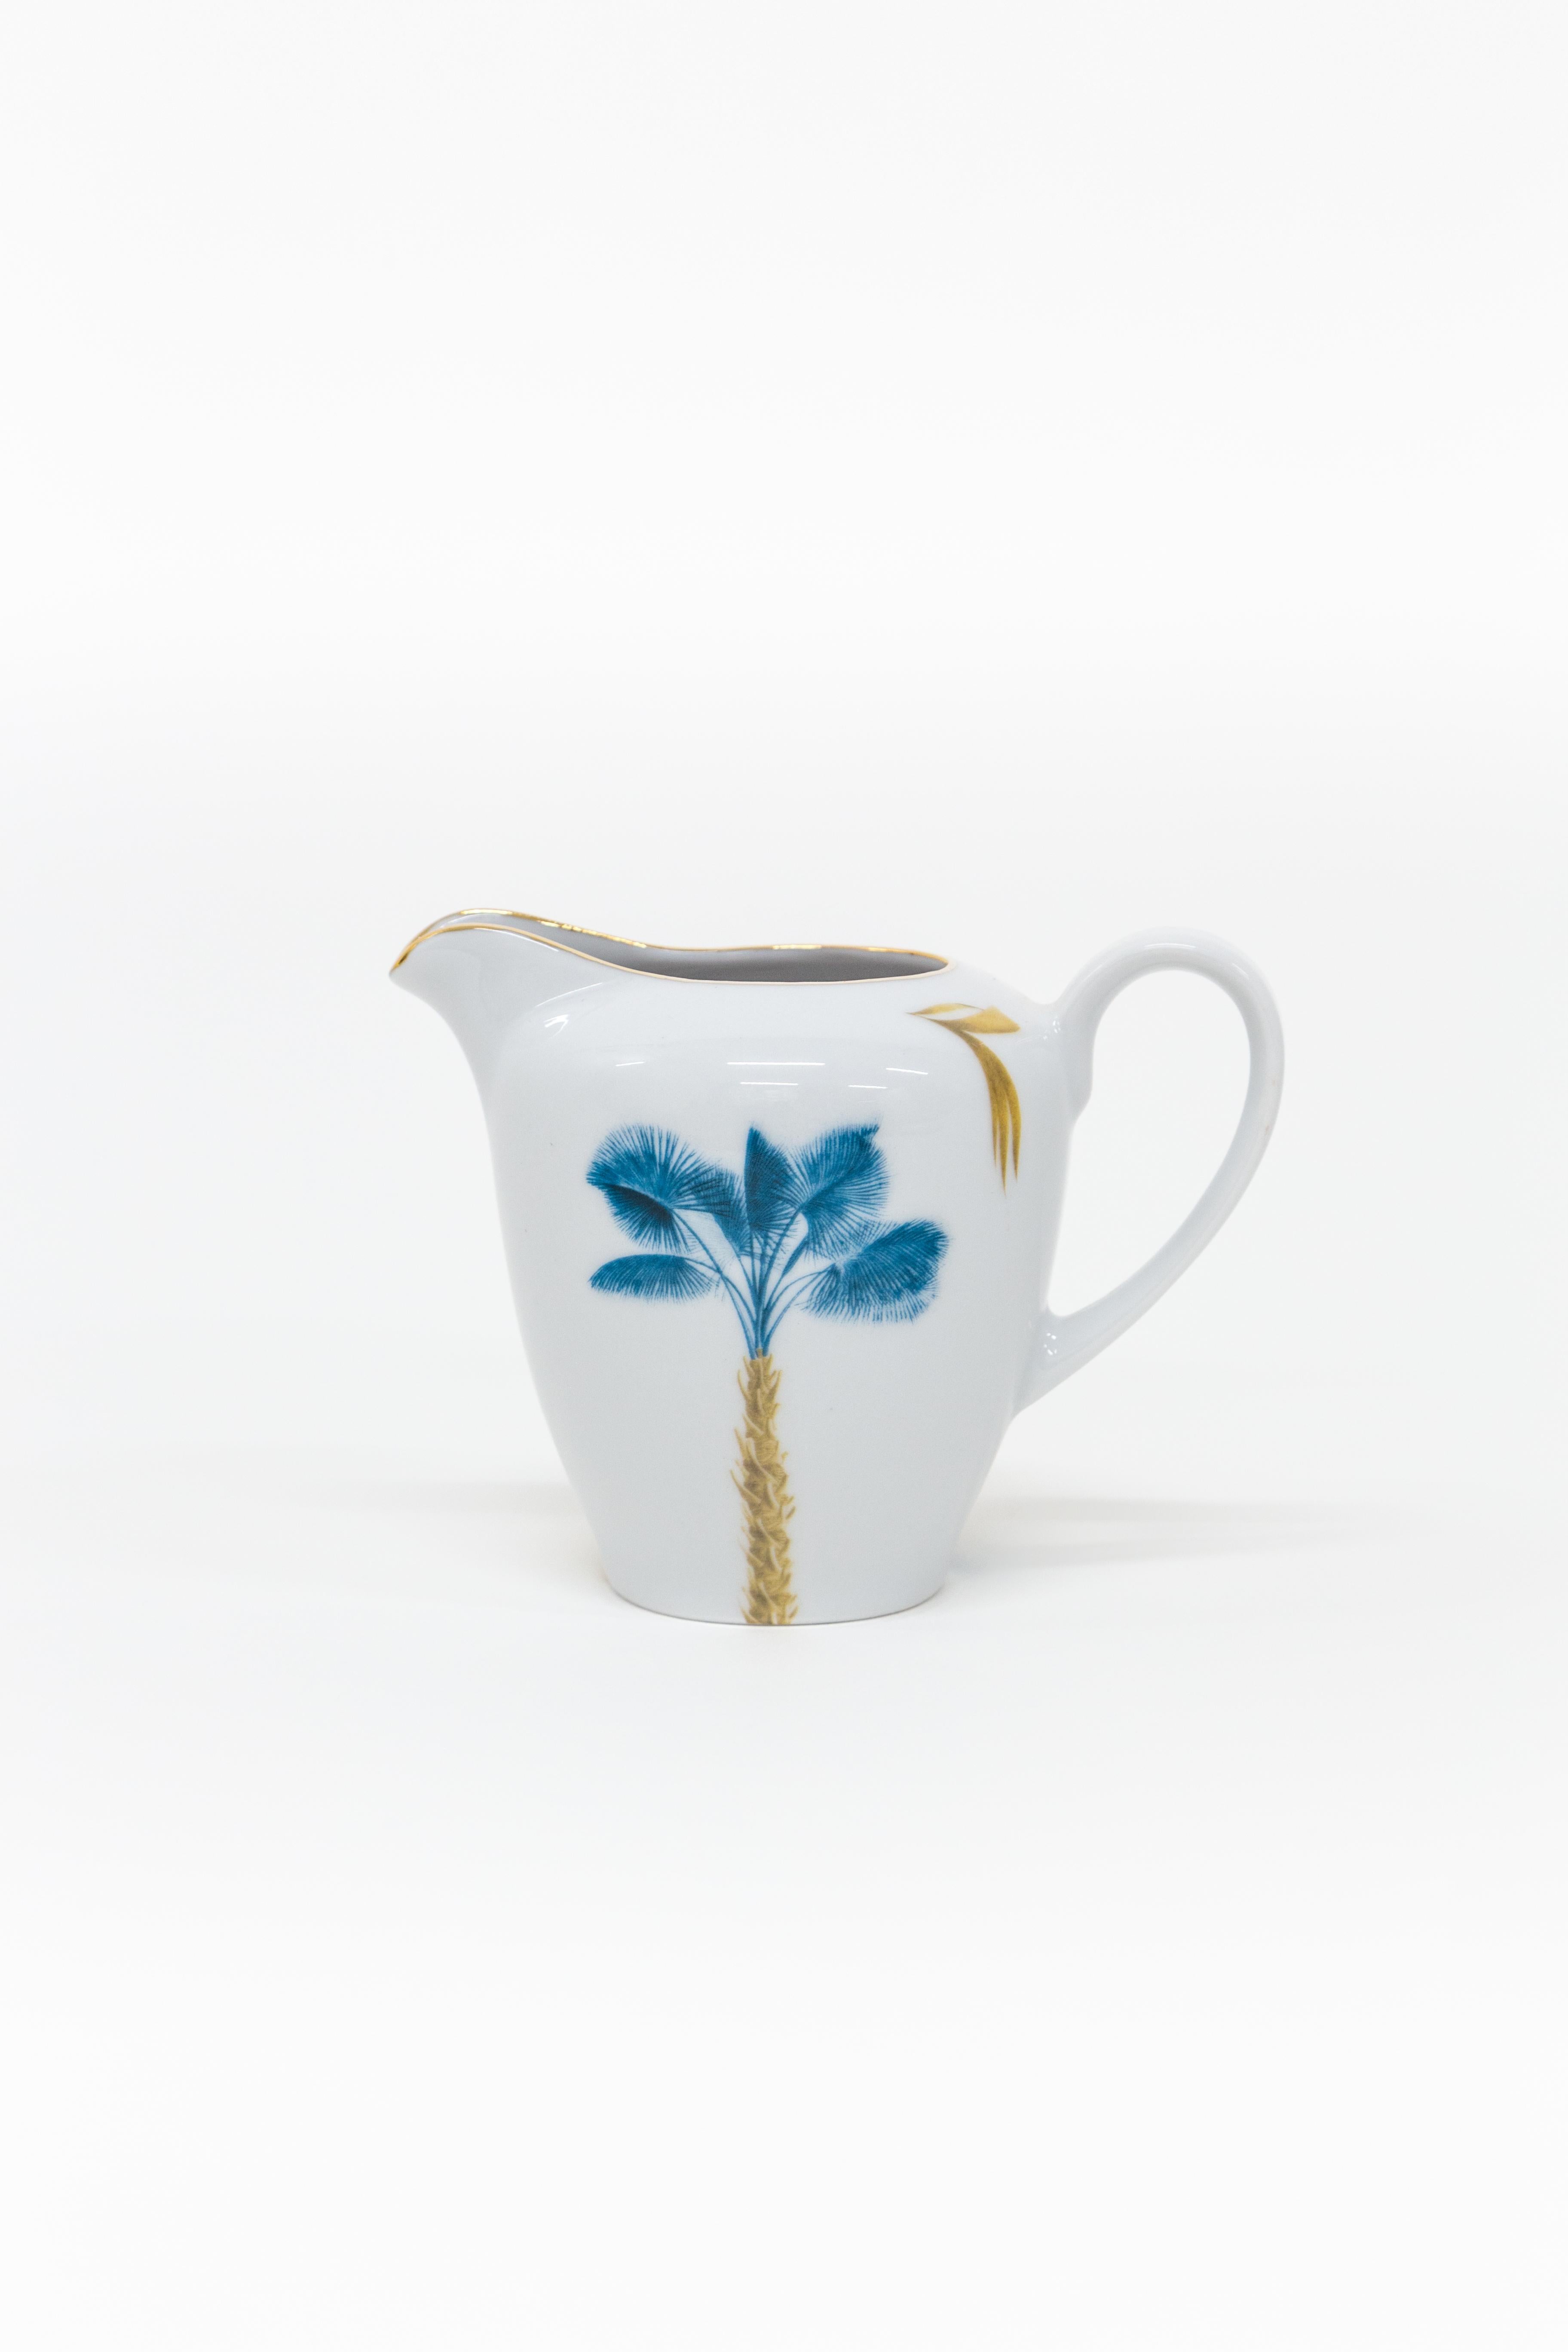 Dieses Tea Time Set ist Teil der Las Palmas Porzellankollektion von Grand Tour by Vito Nesta, die von Vitos ausgedehnten Reisen um die Welt inspiriert ist. In diesem Set sind wunderschöne Palmen von goldenen und blauen Blättern umgeben. Dieses